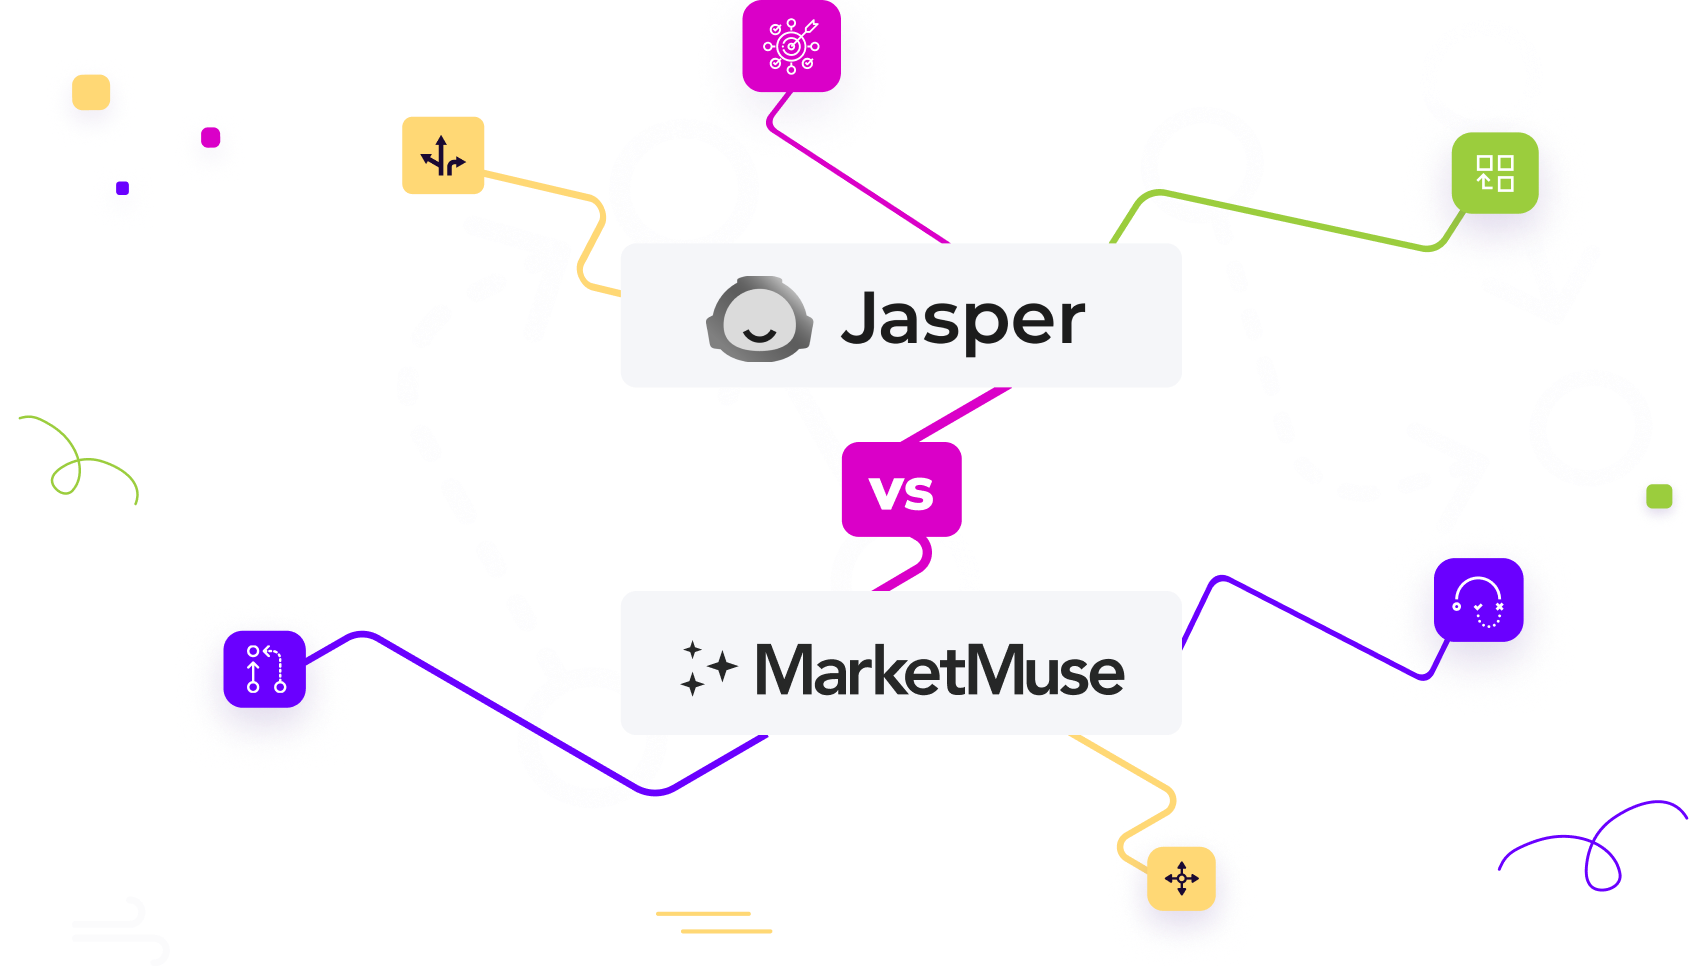 Jasper vs MarketMuse